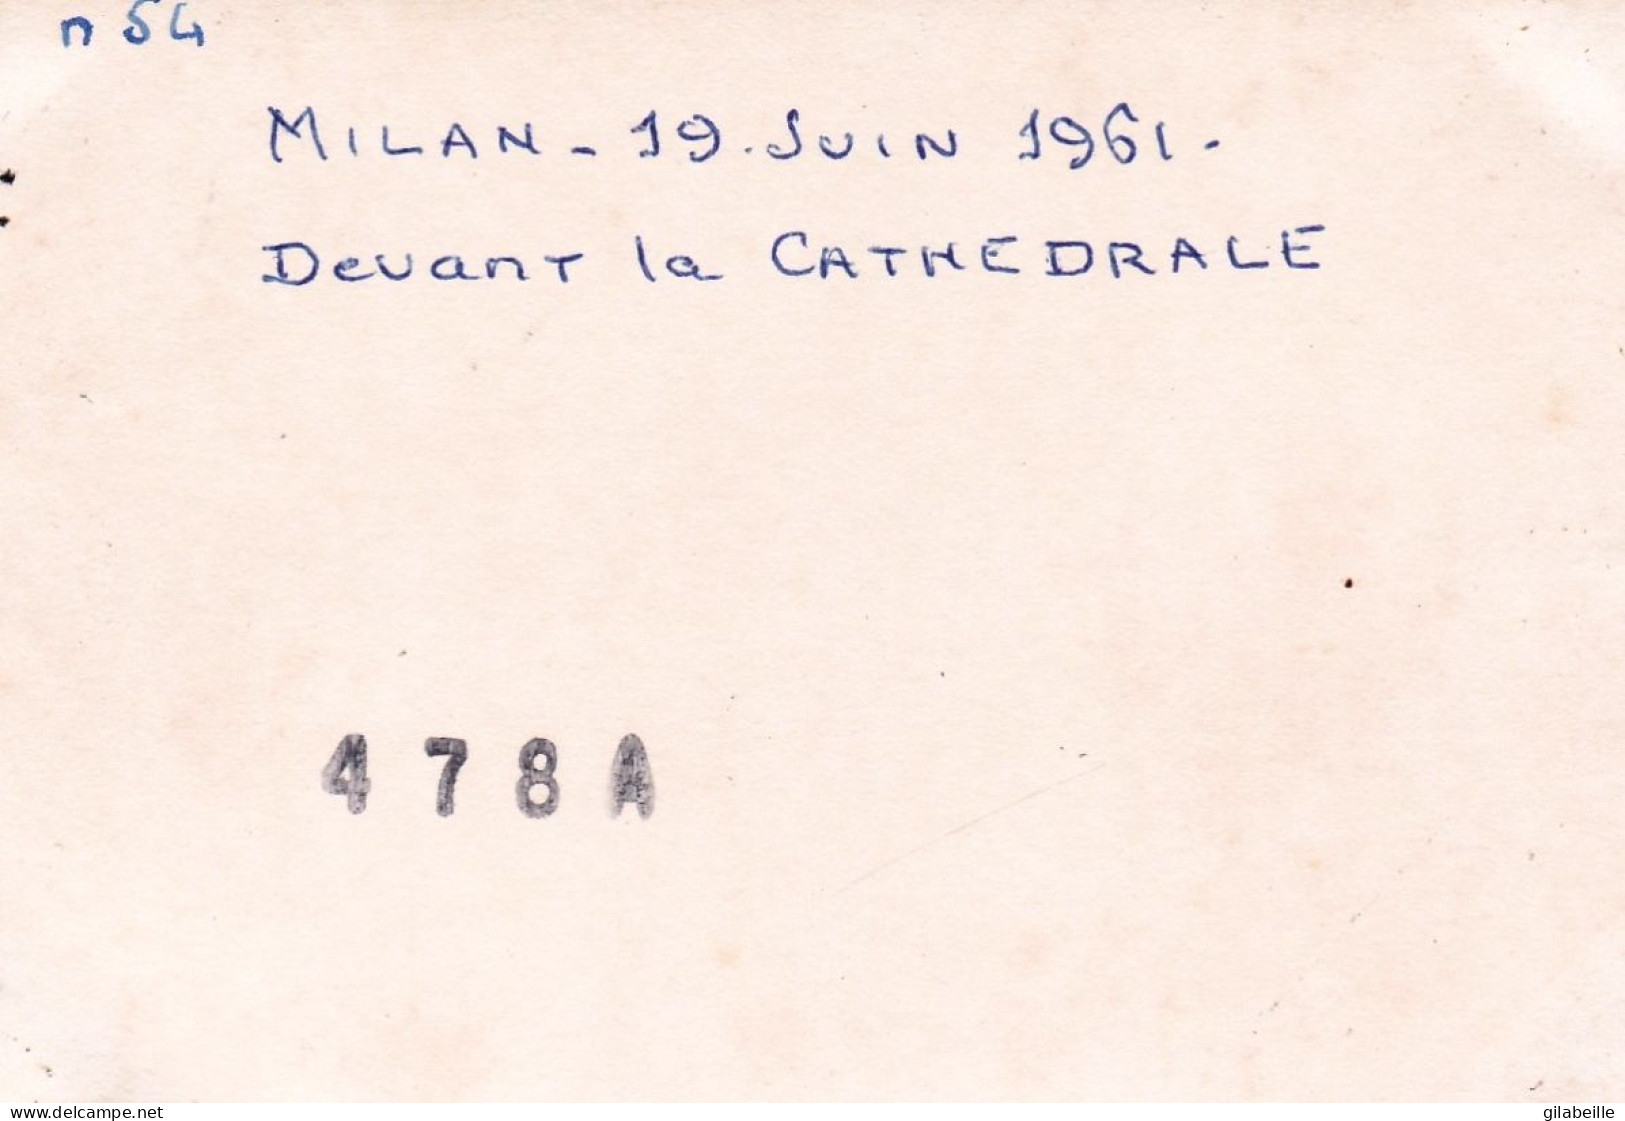 Photo 10.0 X 7.2 - MILAN  - MILANO - Devant  La Cathedrale -  Davanti Alla Cattedrale - Juin 1961 - Places